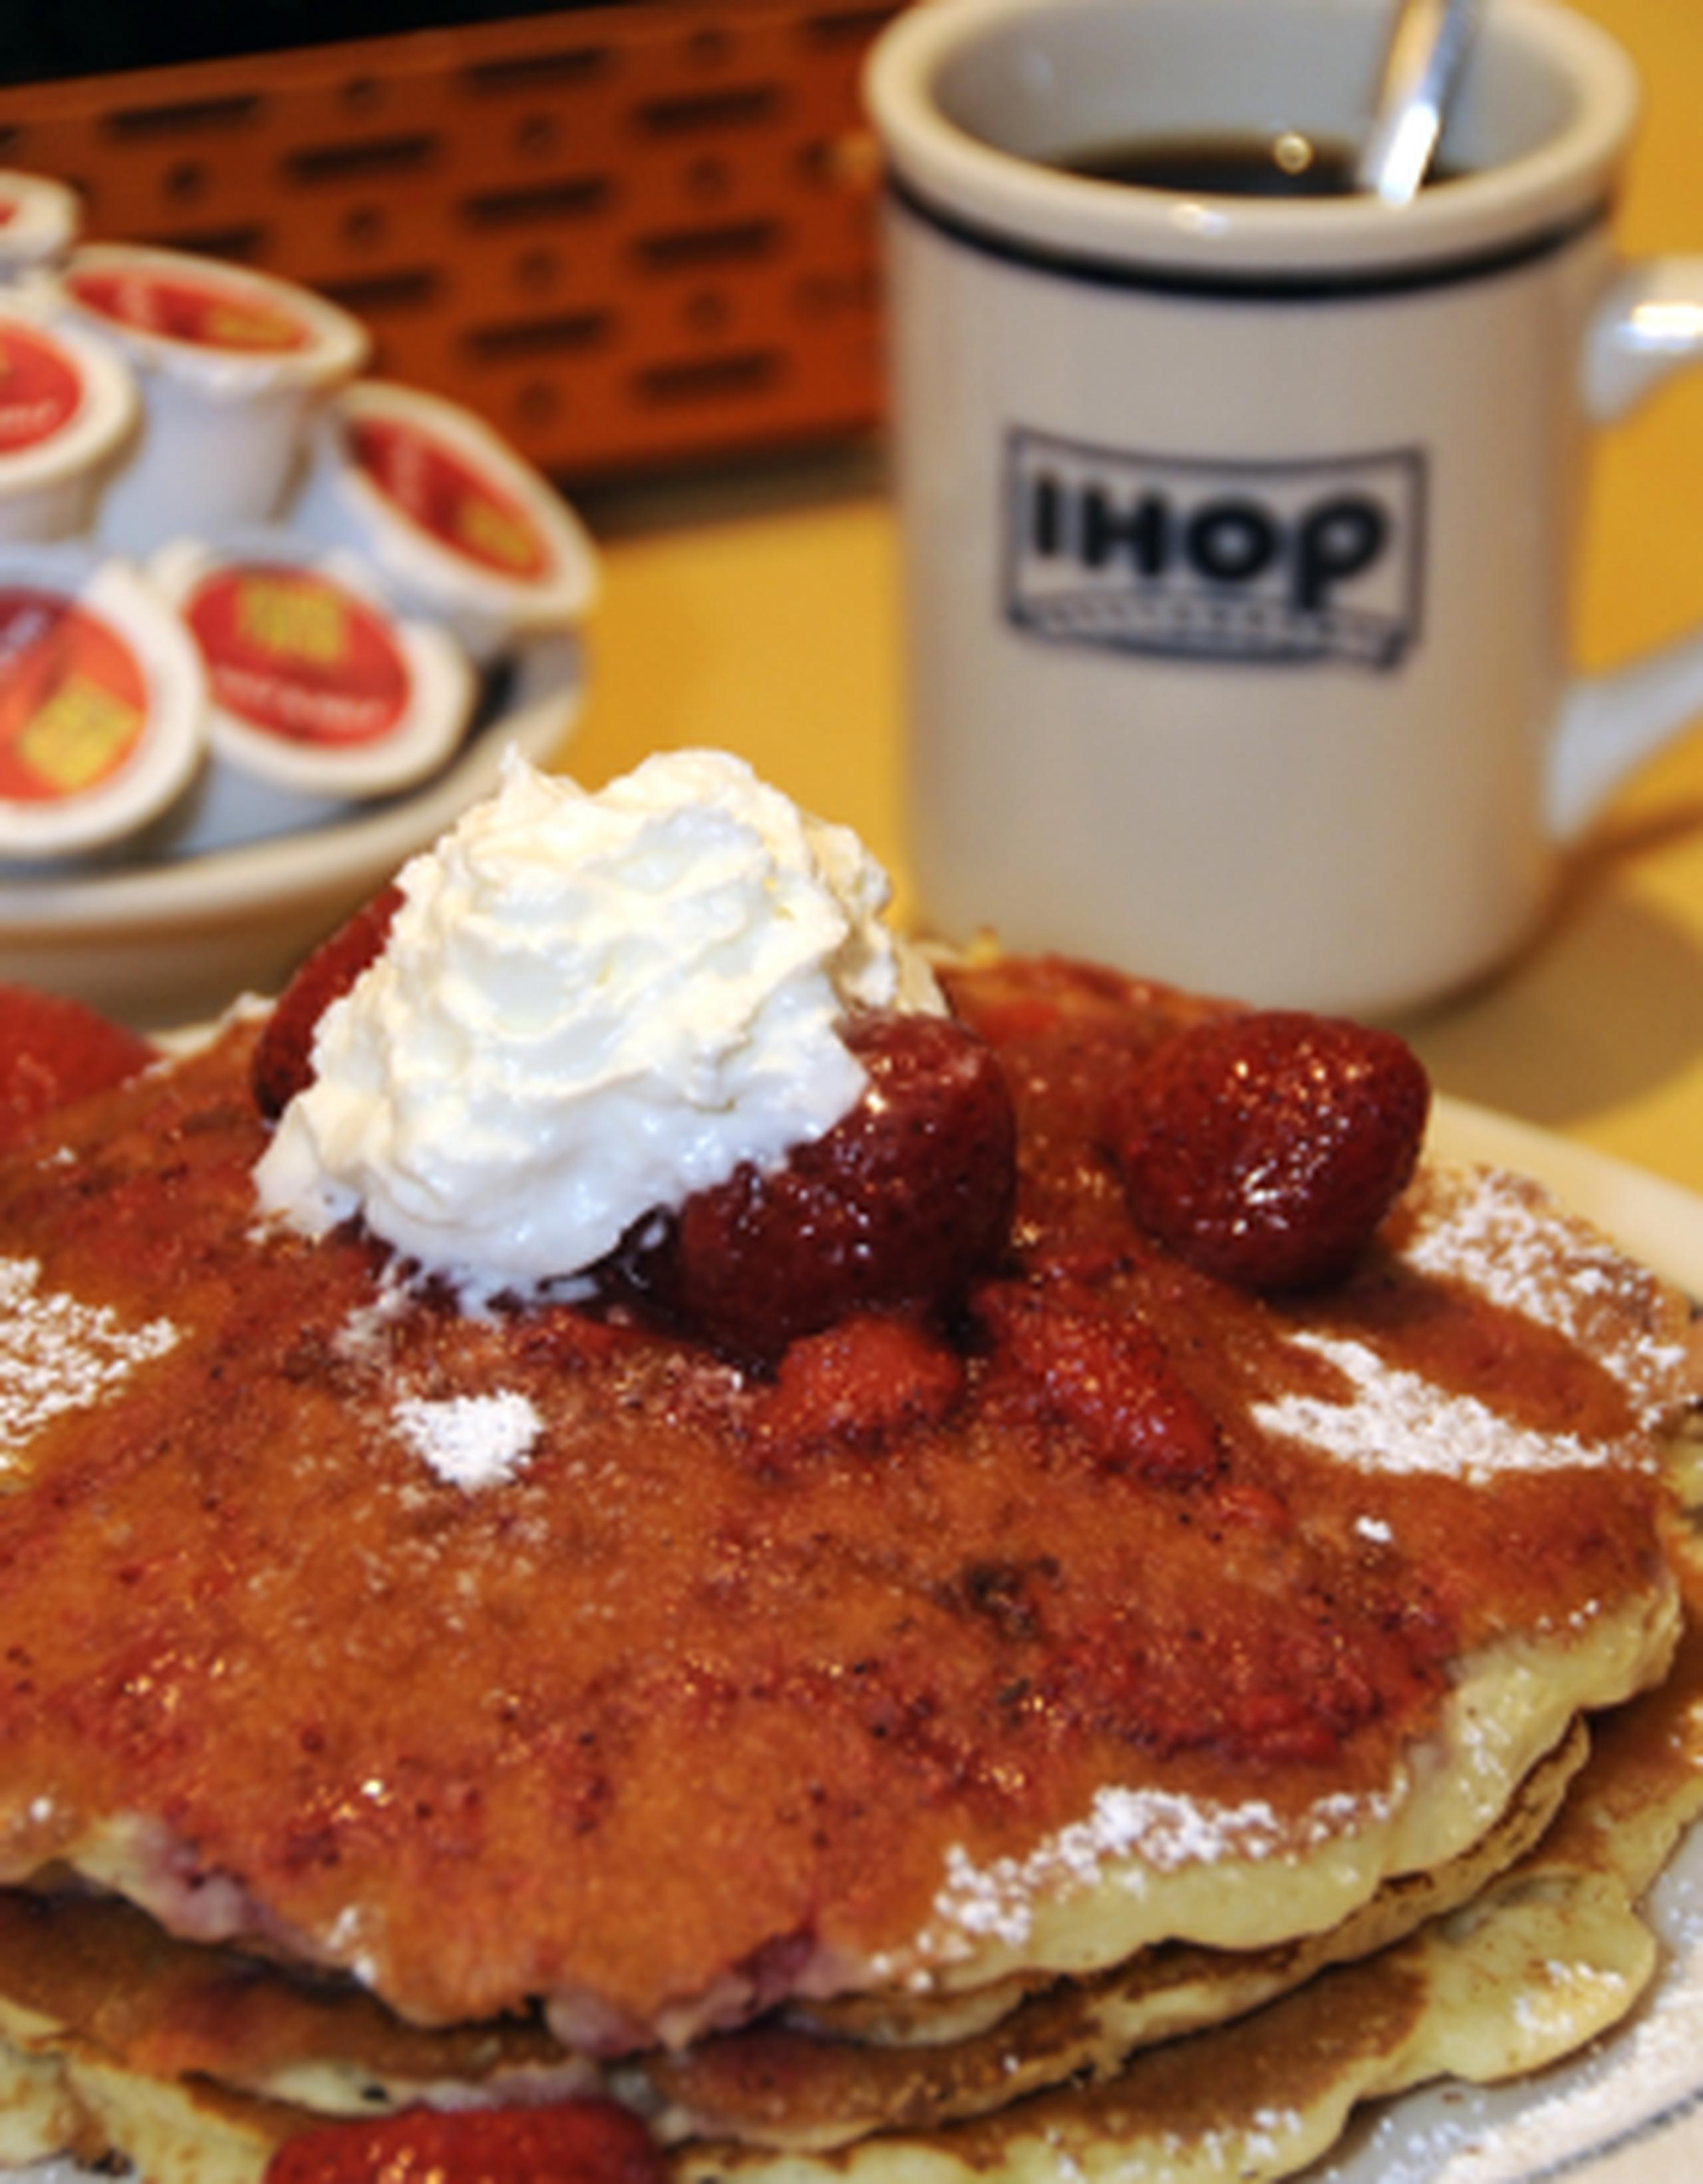 Los establecimientos IHOP ofrecen un desayuno monumental que aporta 1,760 calorías.(Archivo)